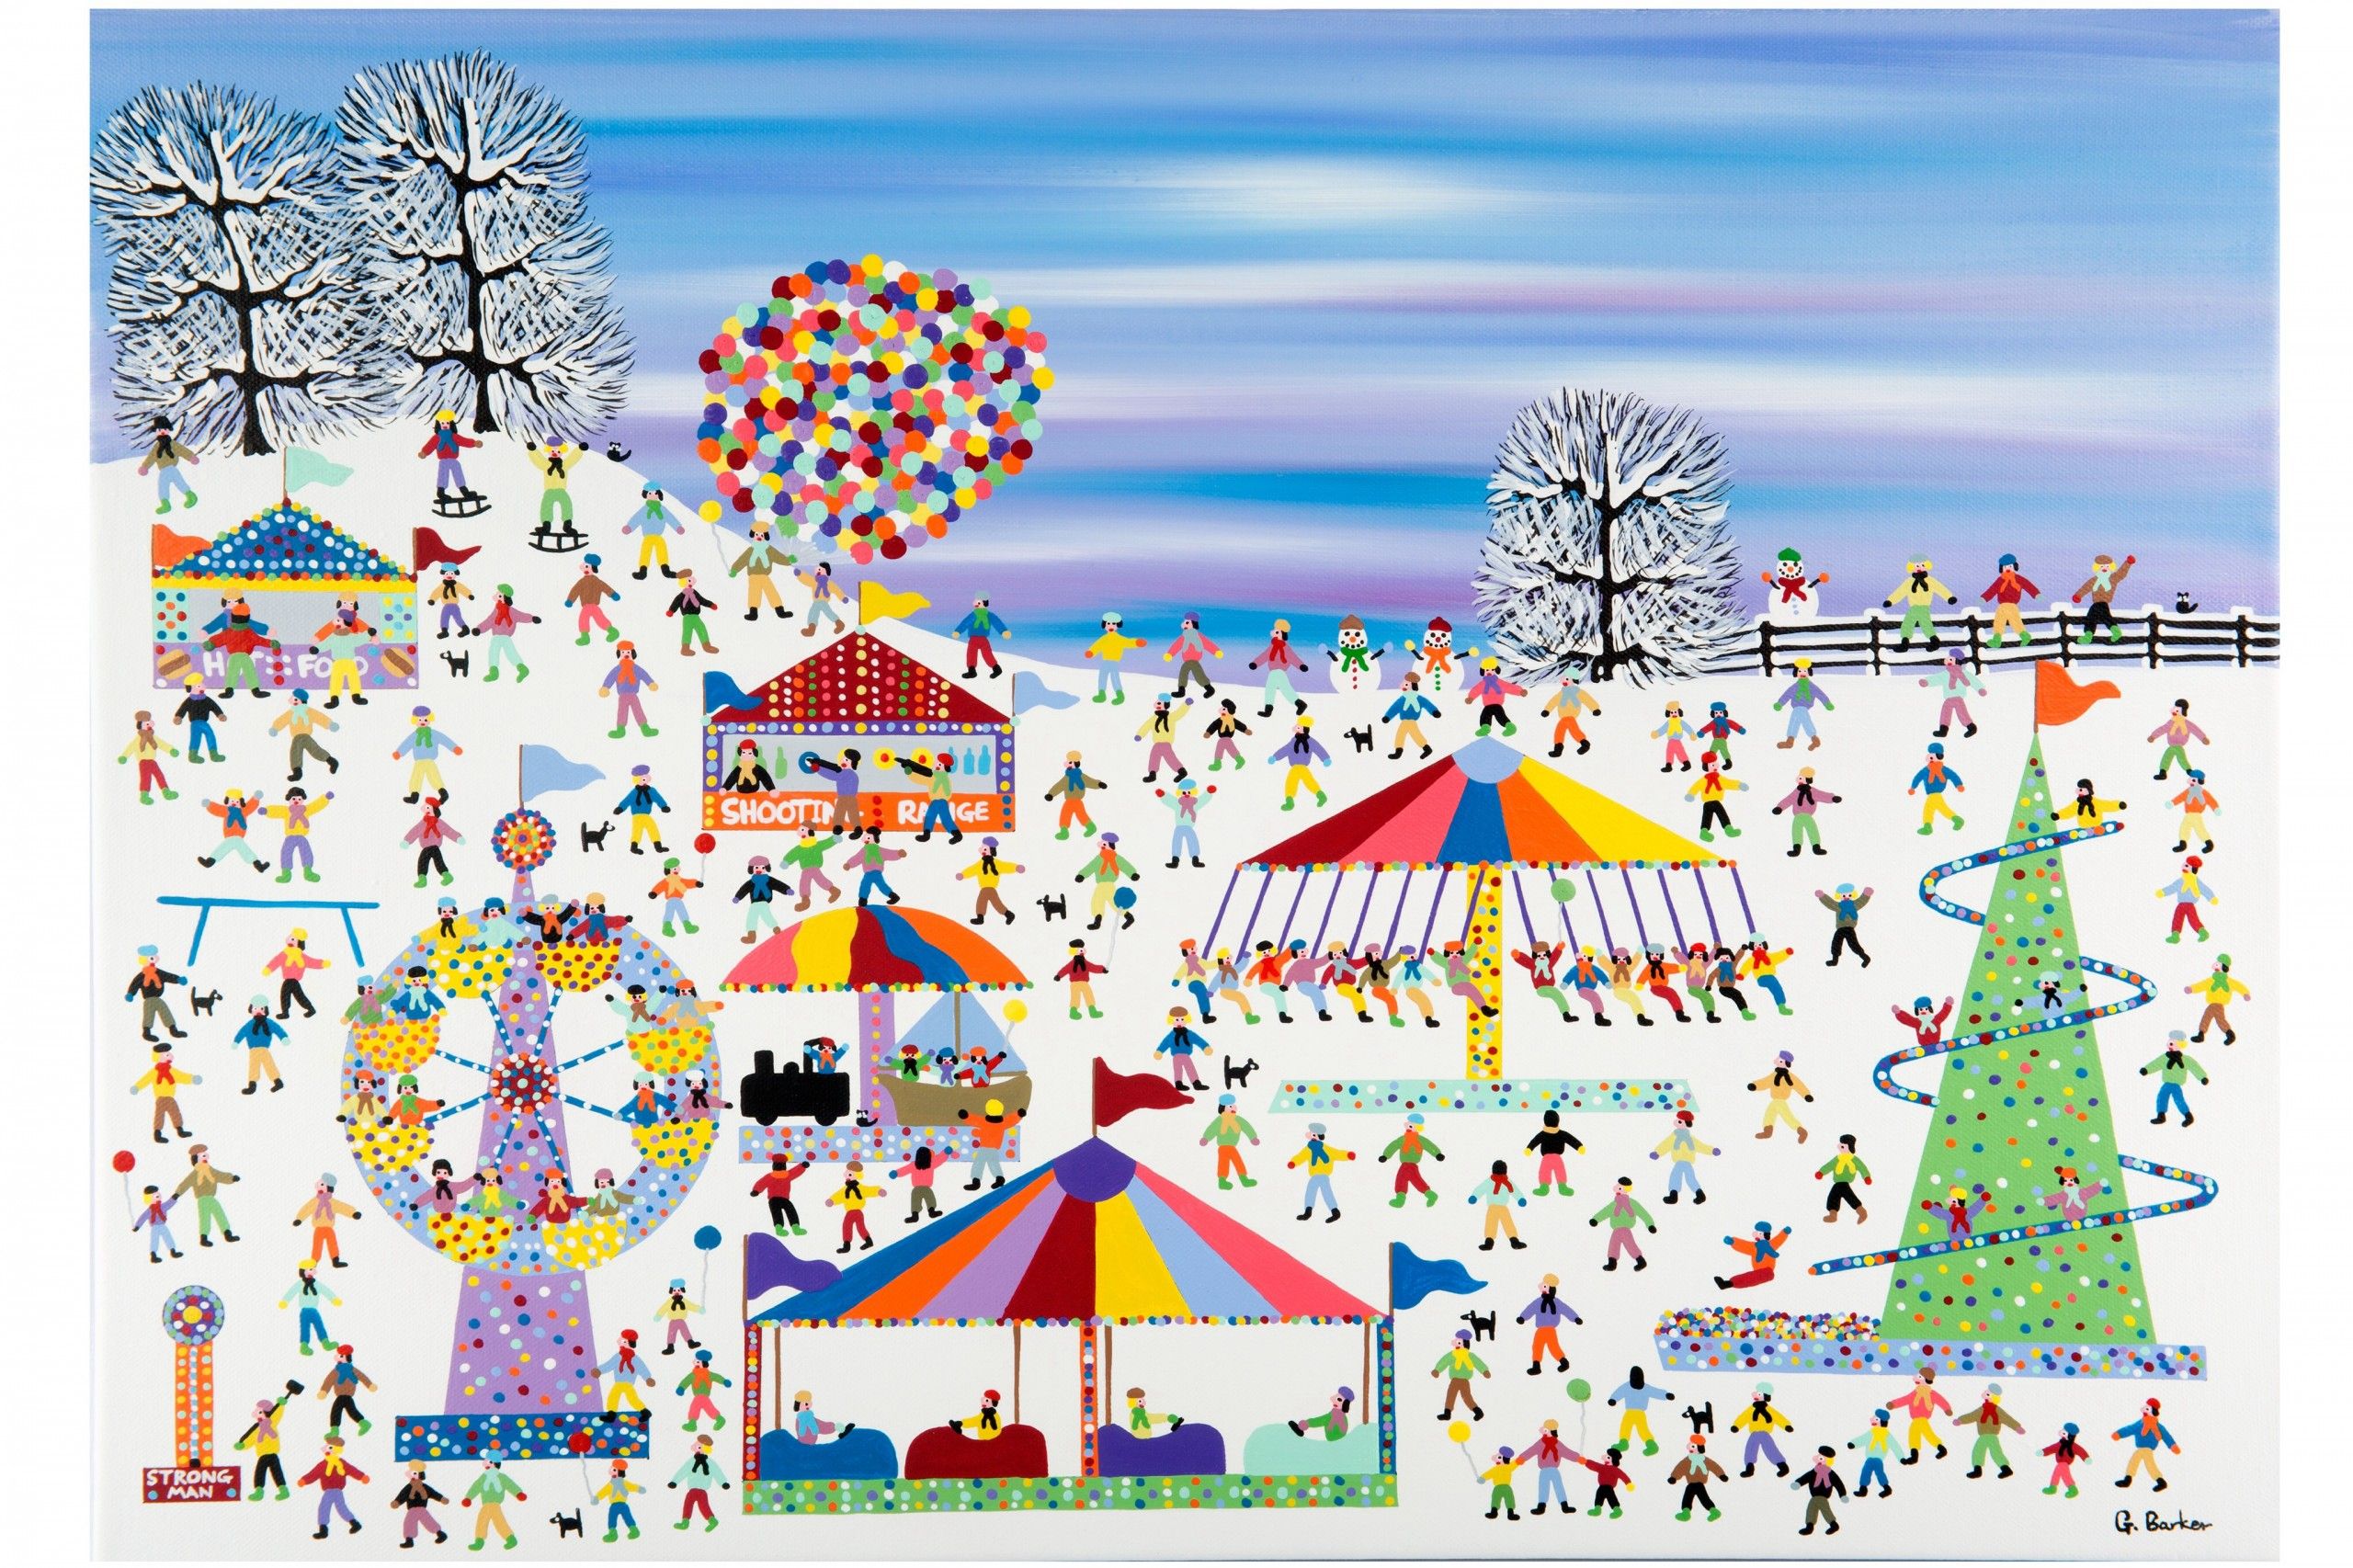 Fairground in the snow by Gordon Barker